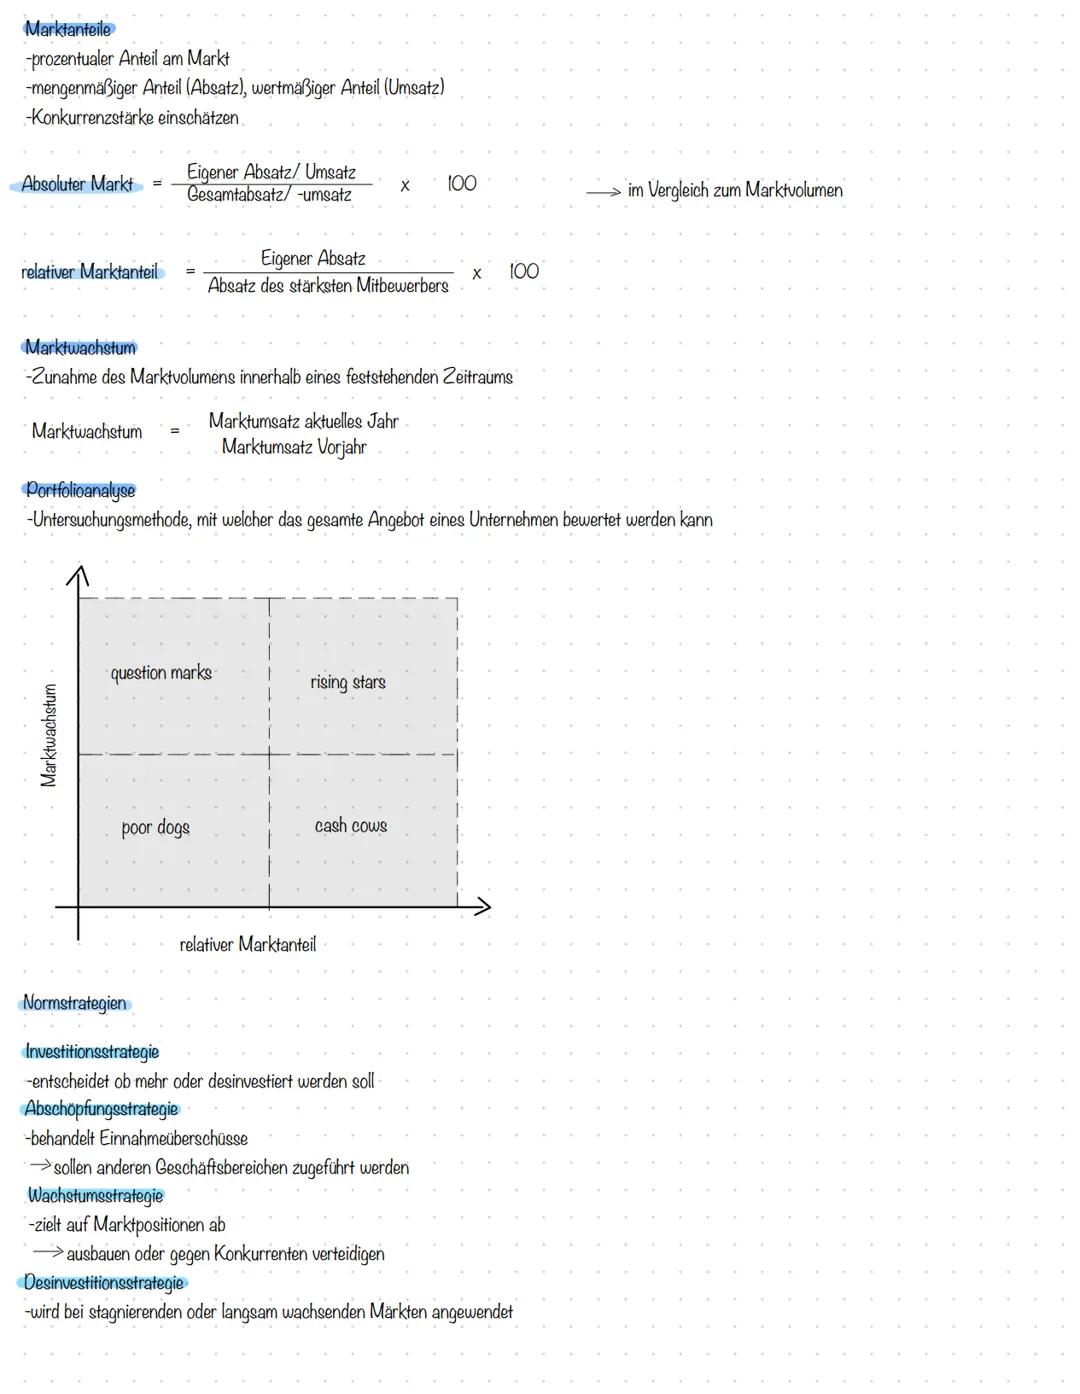 Betriebs-und Volkswirtschaft Marketinglandkarte
SWOT Analyse
Positionierungsstrategien
Produktpolitik
-Produktvariation
Kontrolle des Werbee